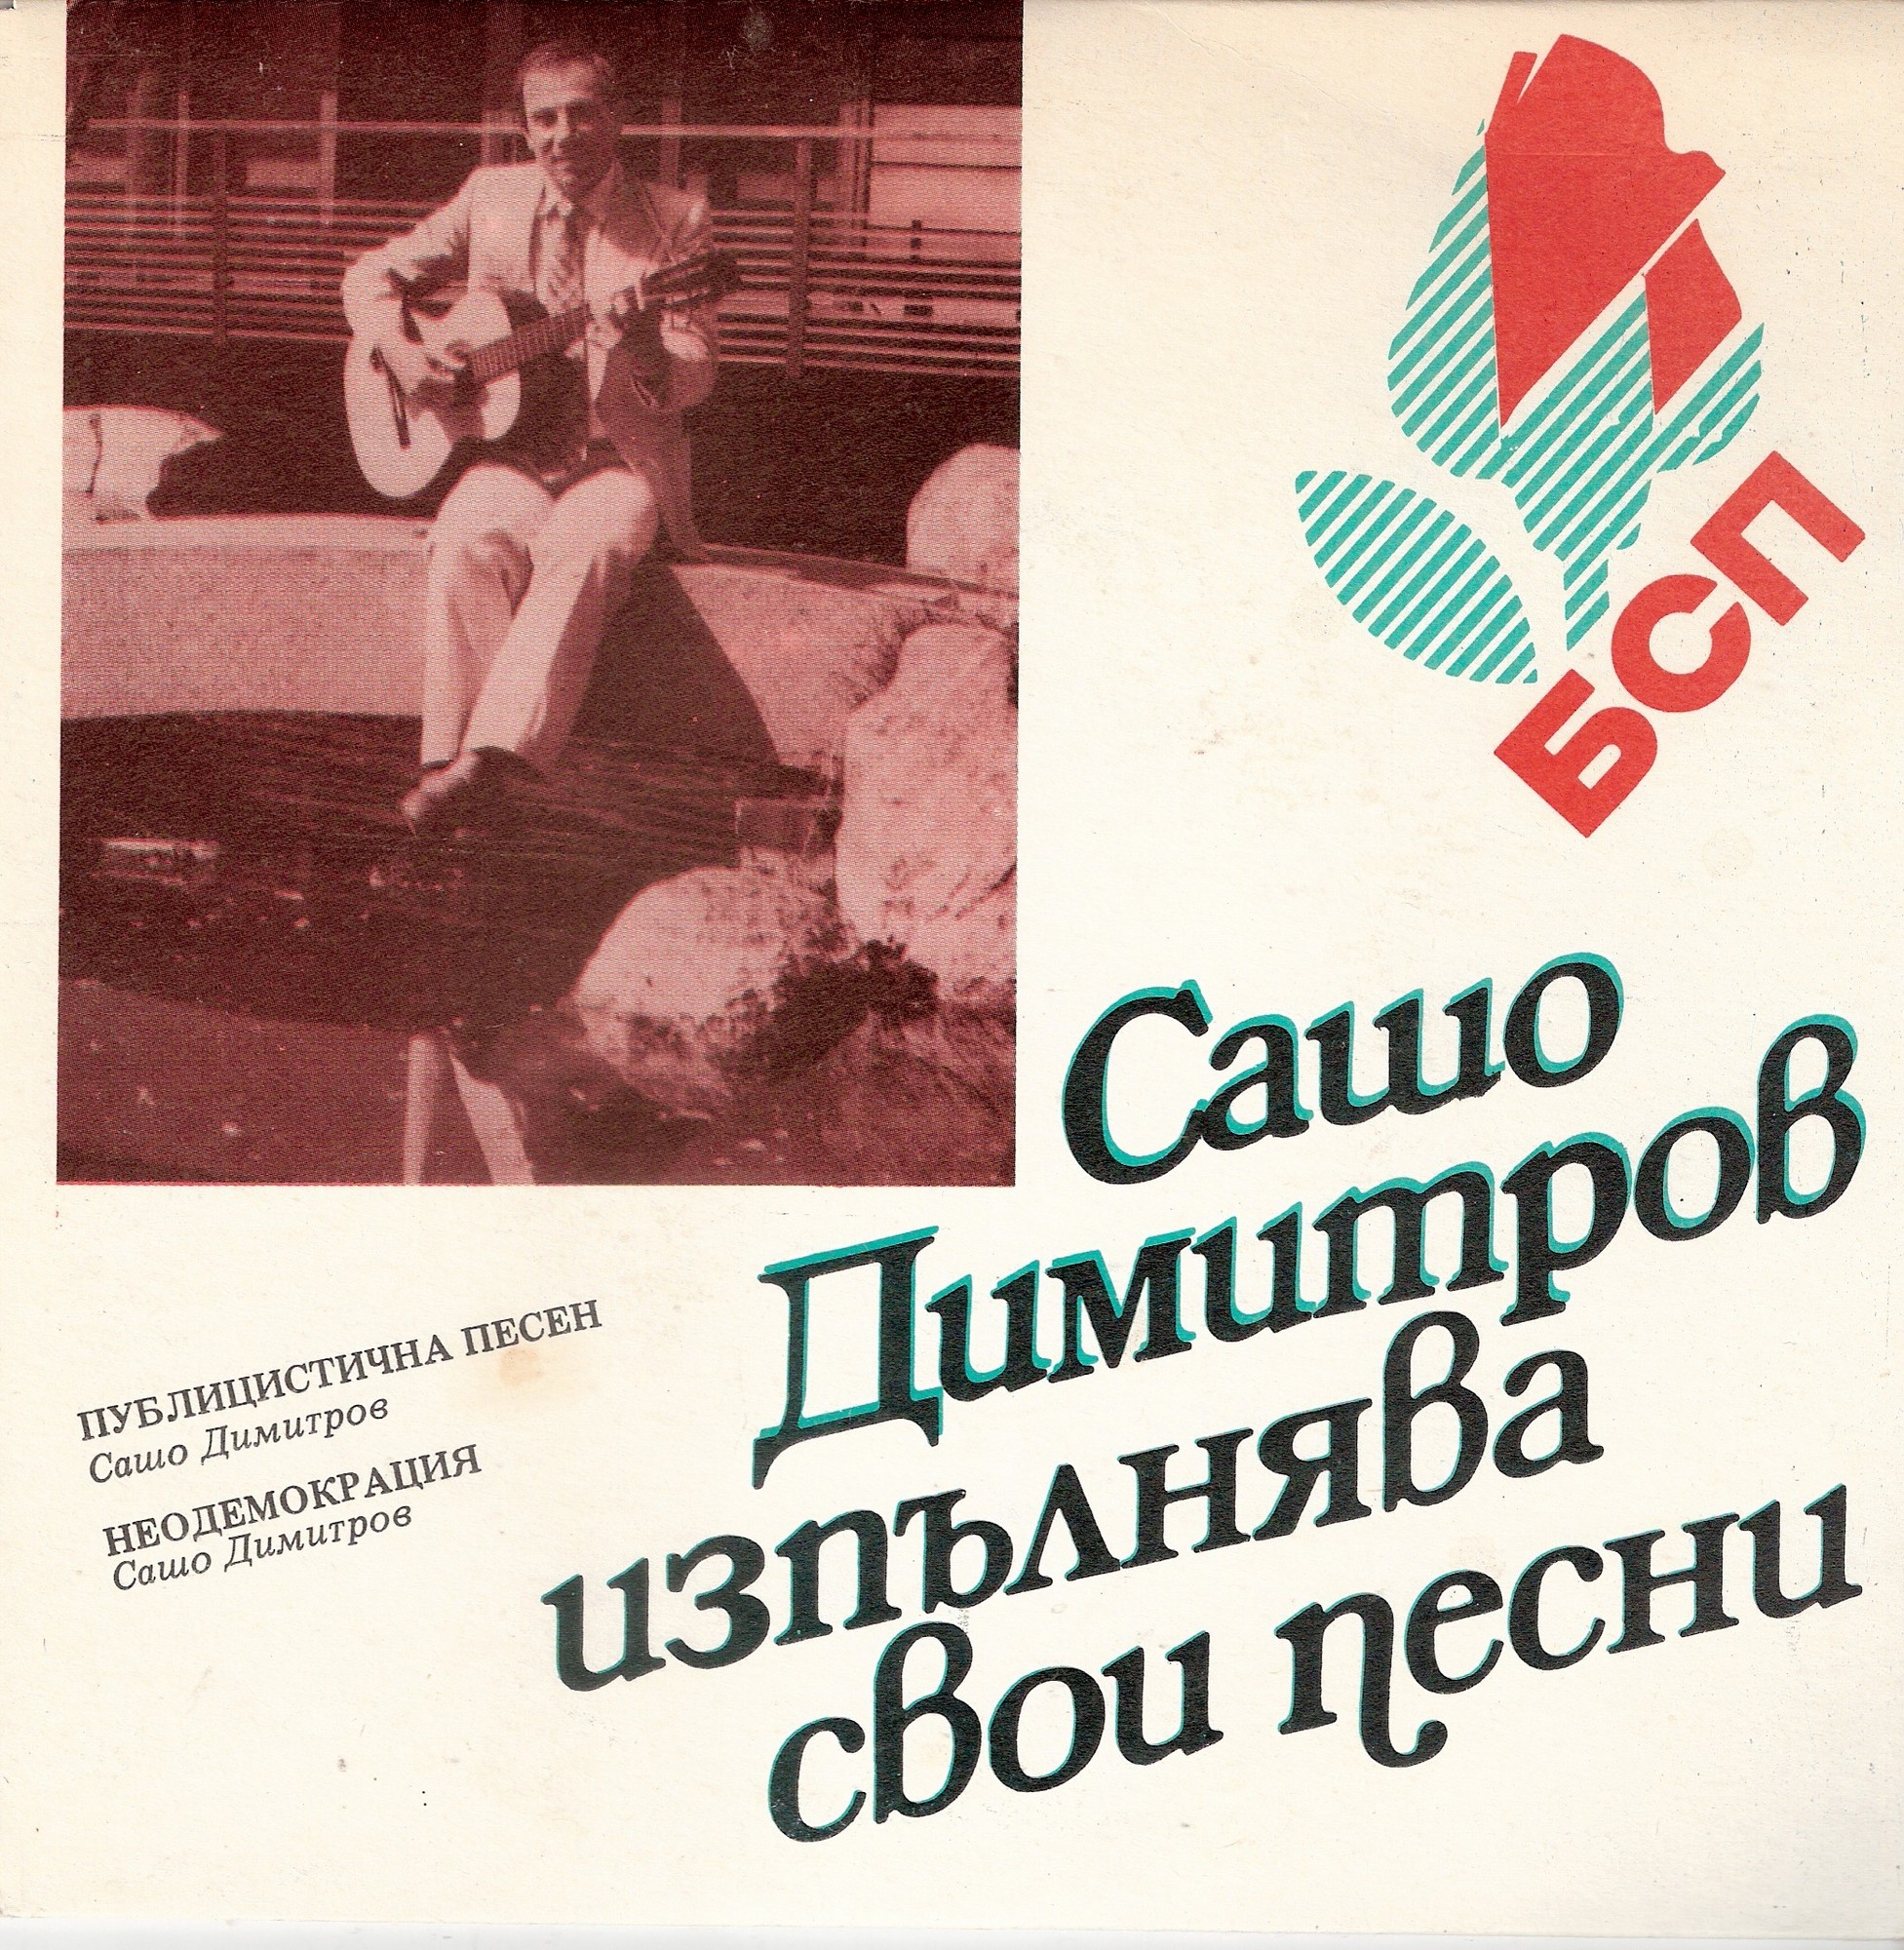 Сашо Димитров изпълнява свои песни